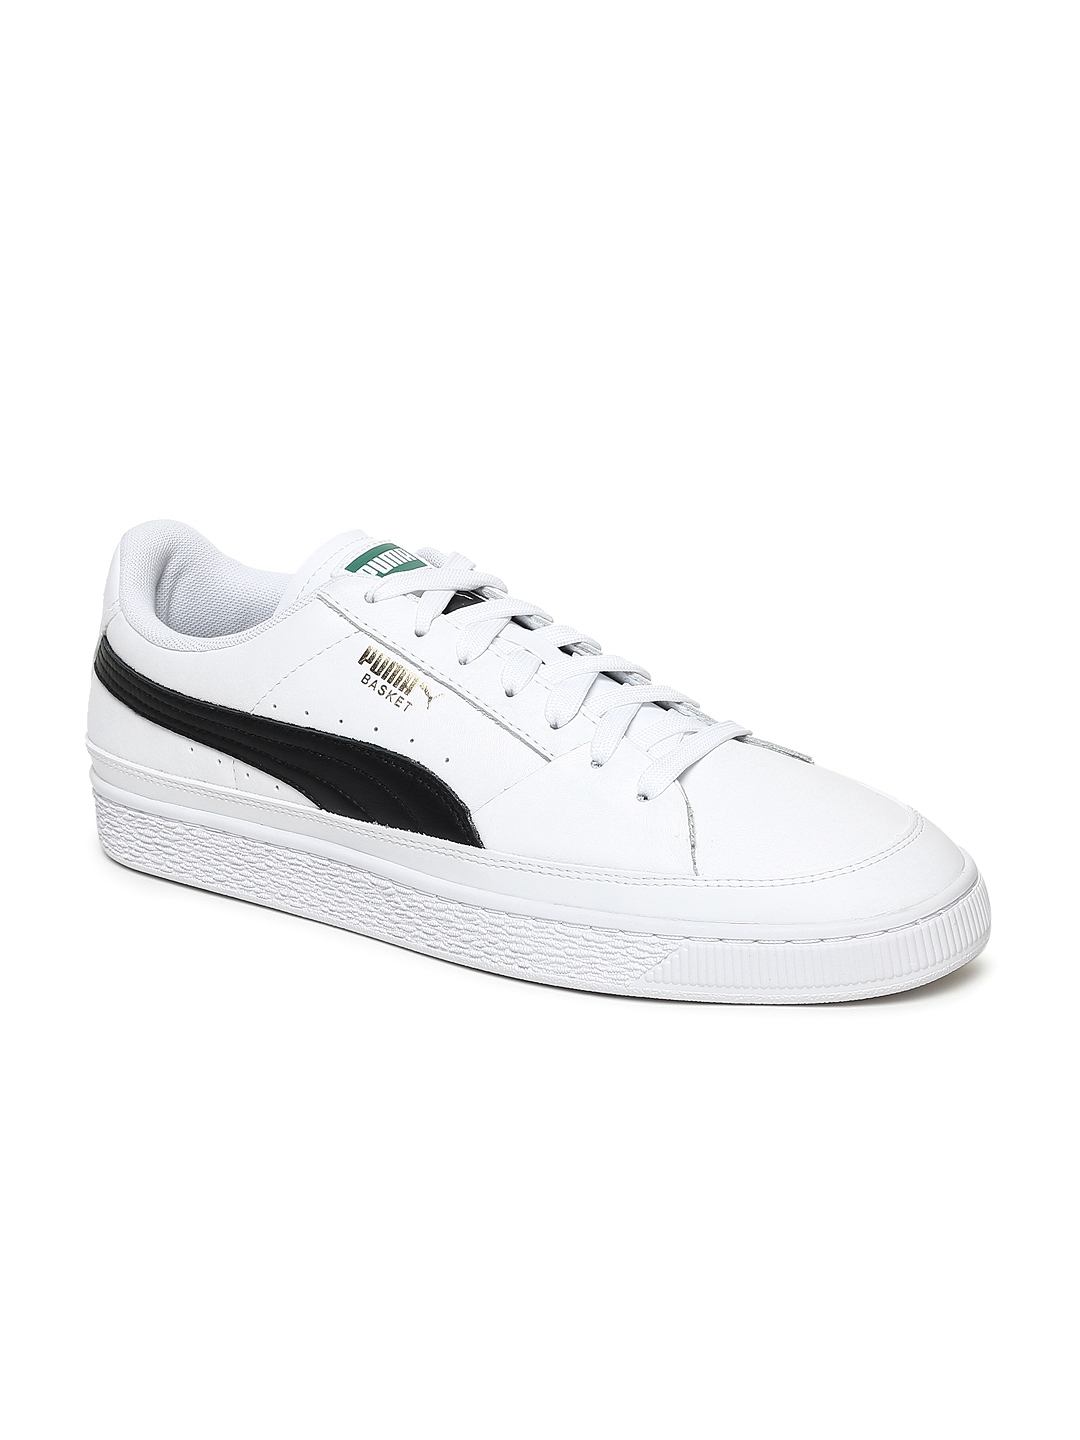 puma full white sneakers